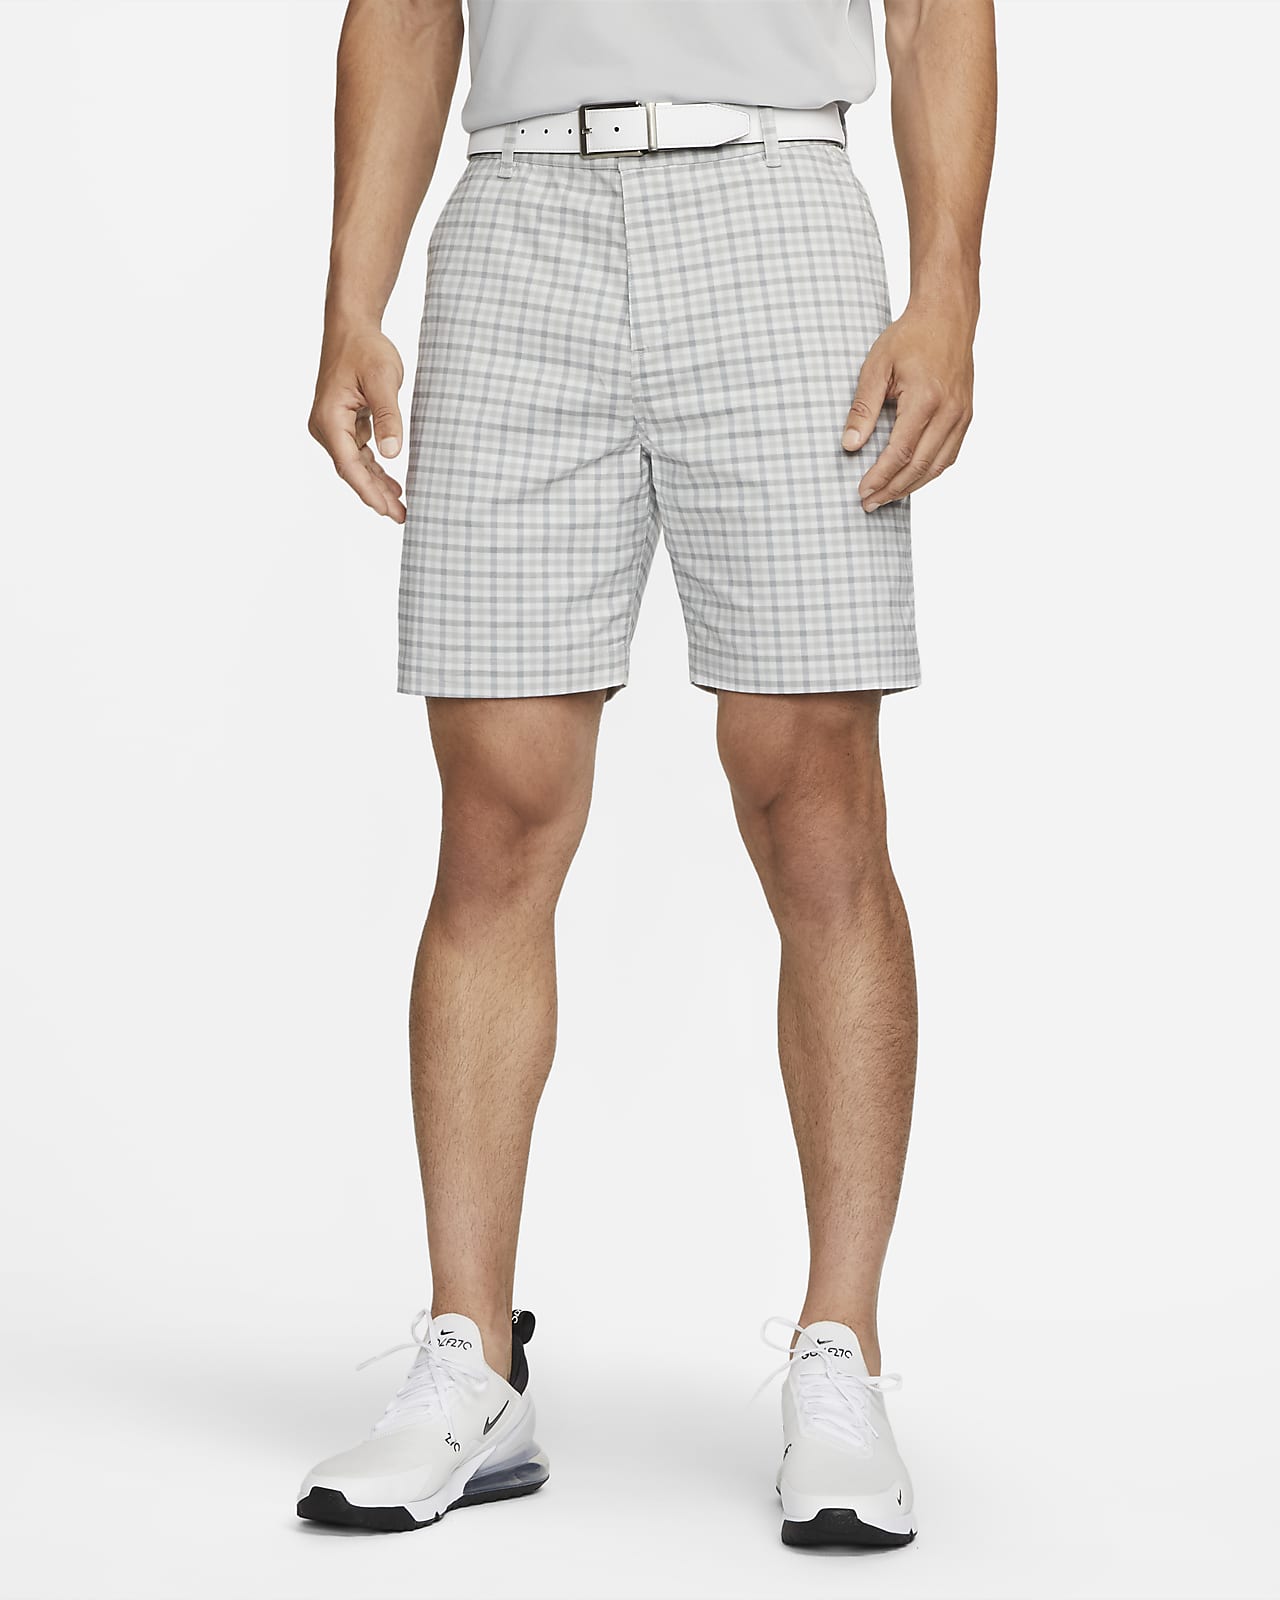 Nike Dri-FIT UV Men's Chino Plaid Golf Shorts